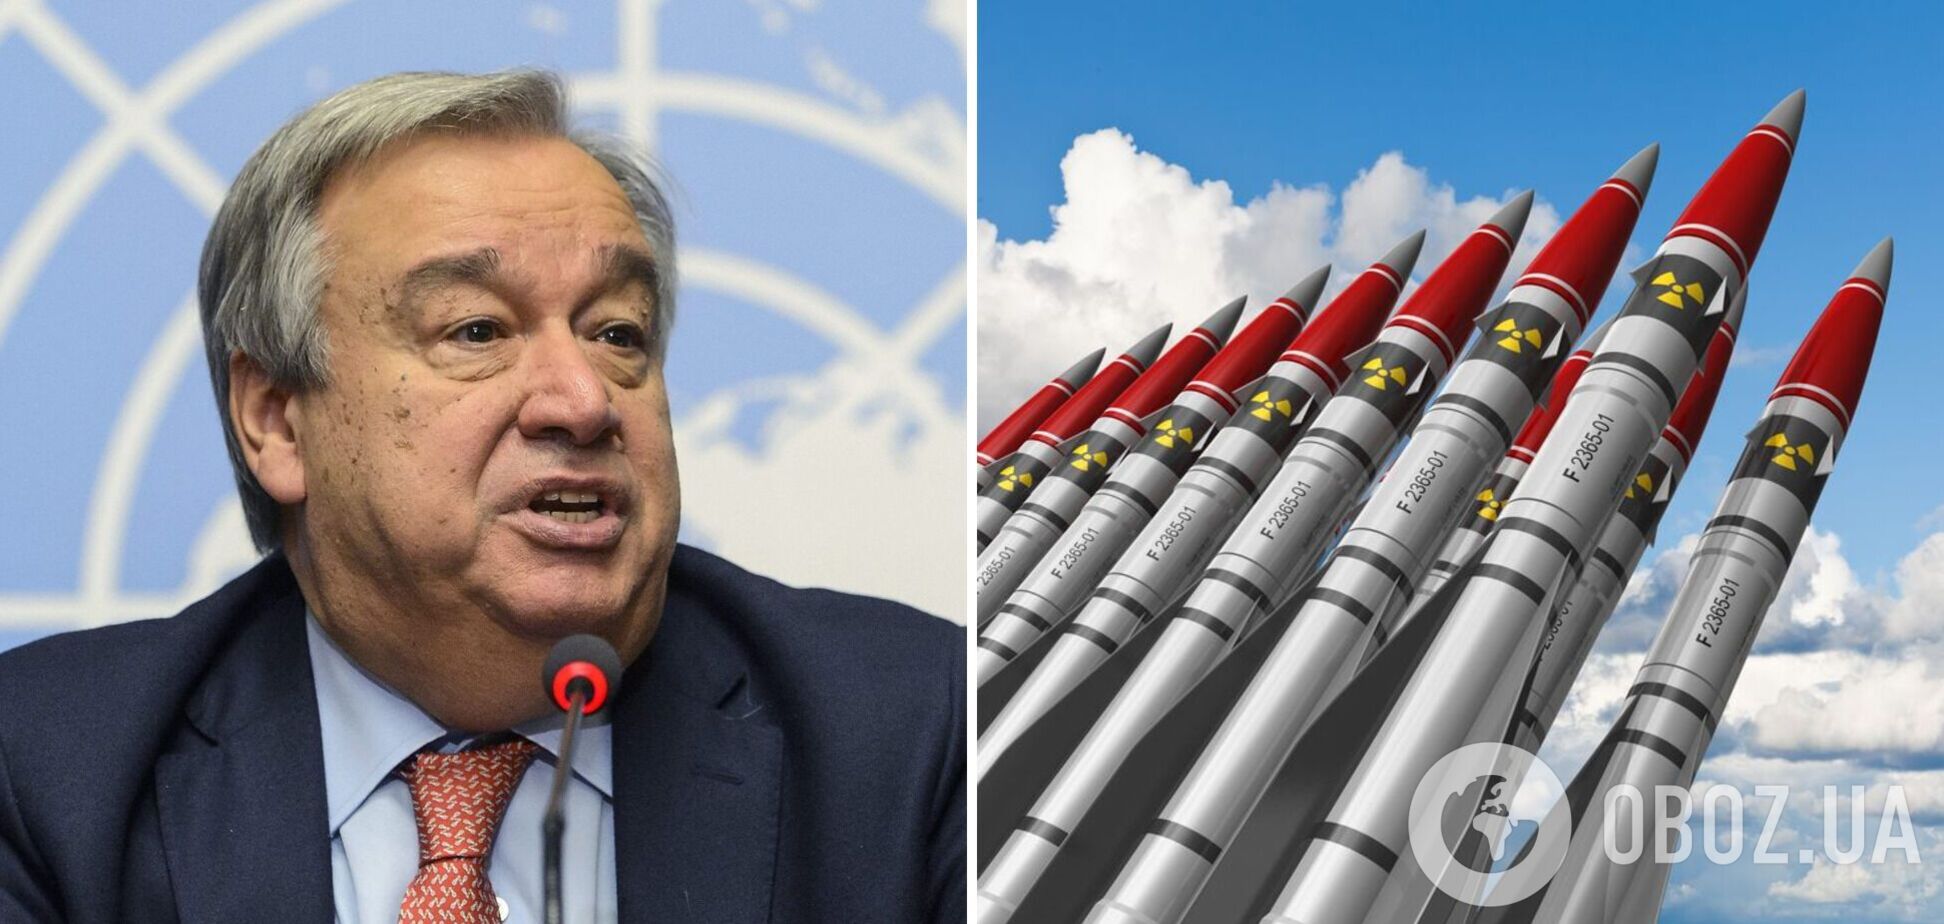 Генсек ООН призвал мир полностью уничтожить ядерное оружие: риски достигли критического уровня